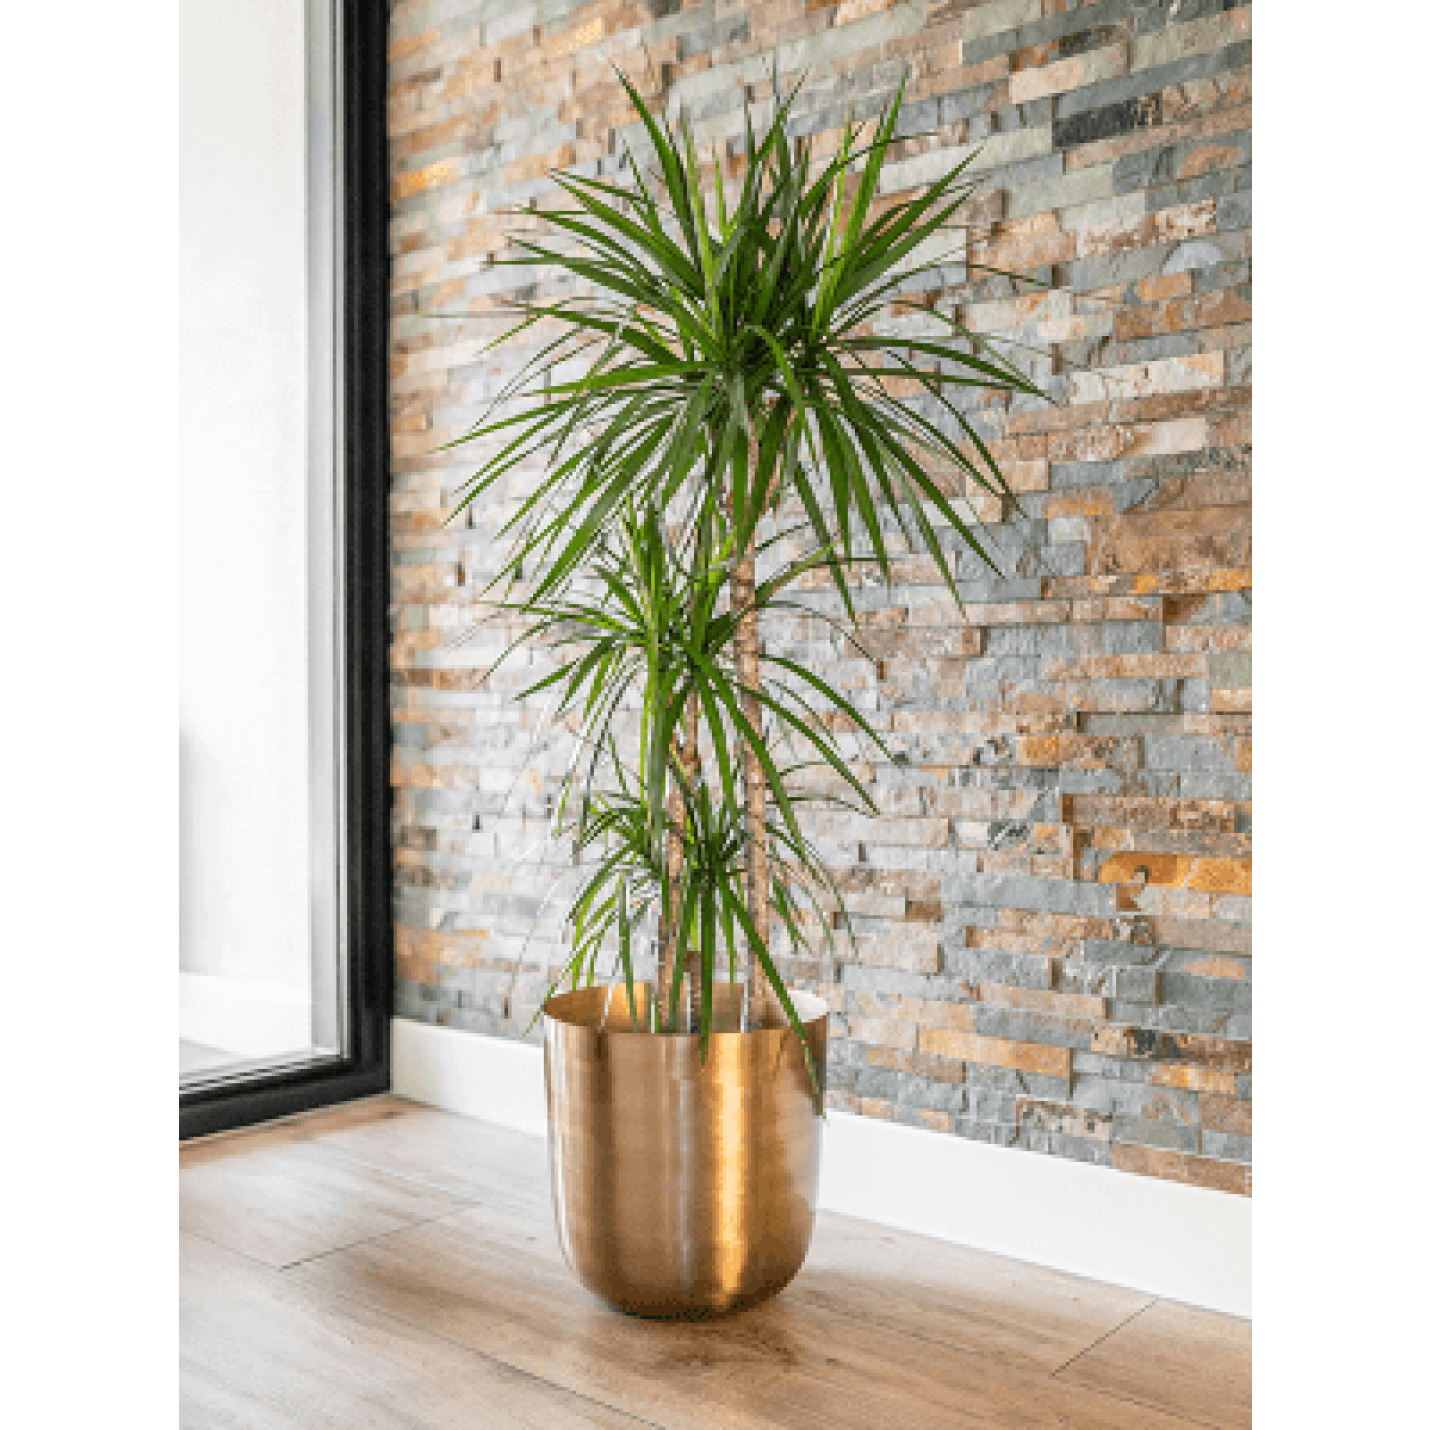 Verona - Goud - Sierpot - Collectie van hoogwaardige kunstplanten en zijden bloemboeketten, inclusief kunstbloemen en nepplanten voor interieurdecoratie, perfect voor een onderhoudsvrij, groen thuis of kantoor.